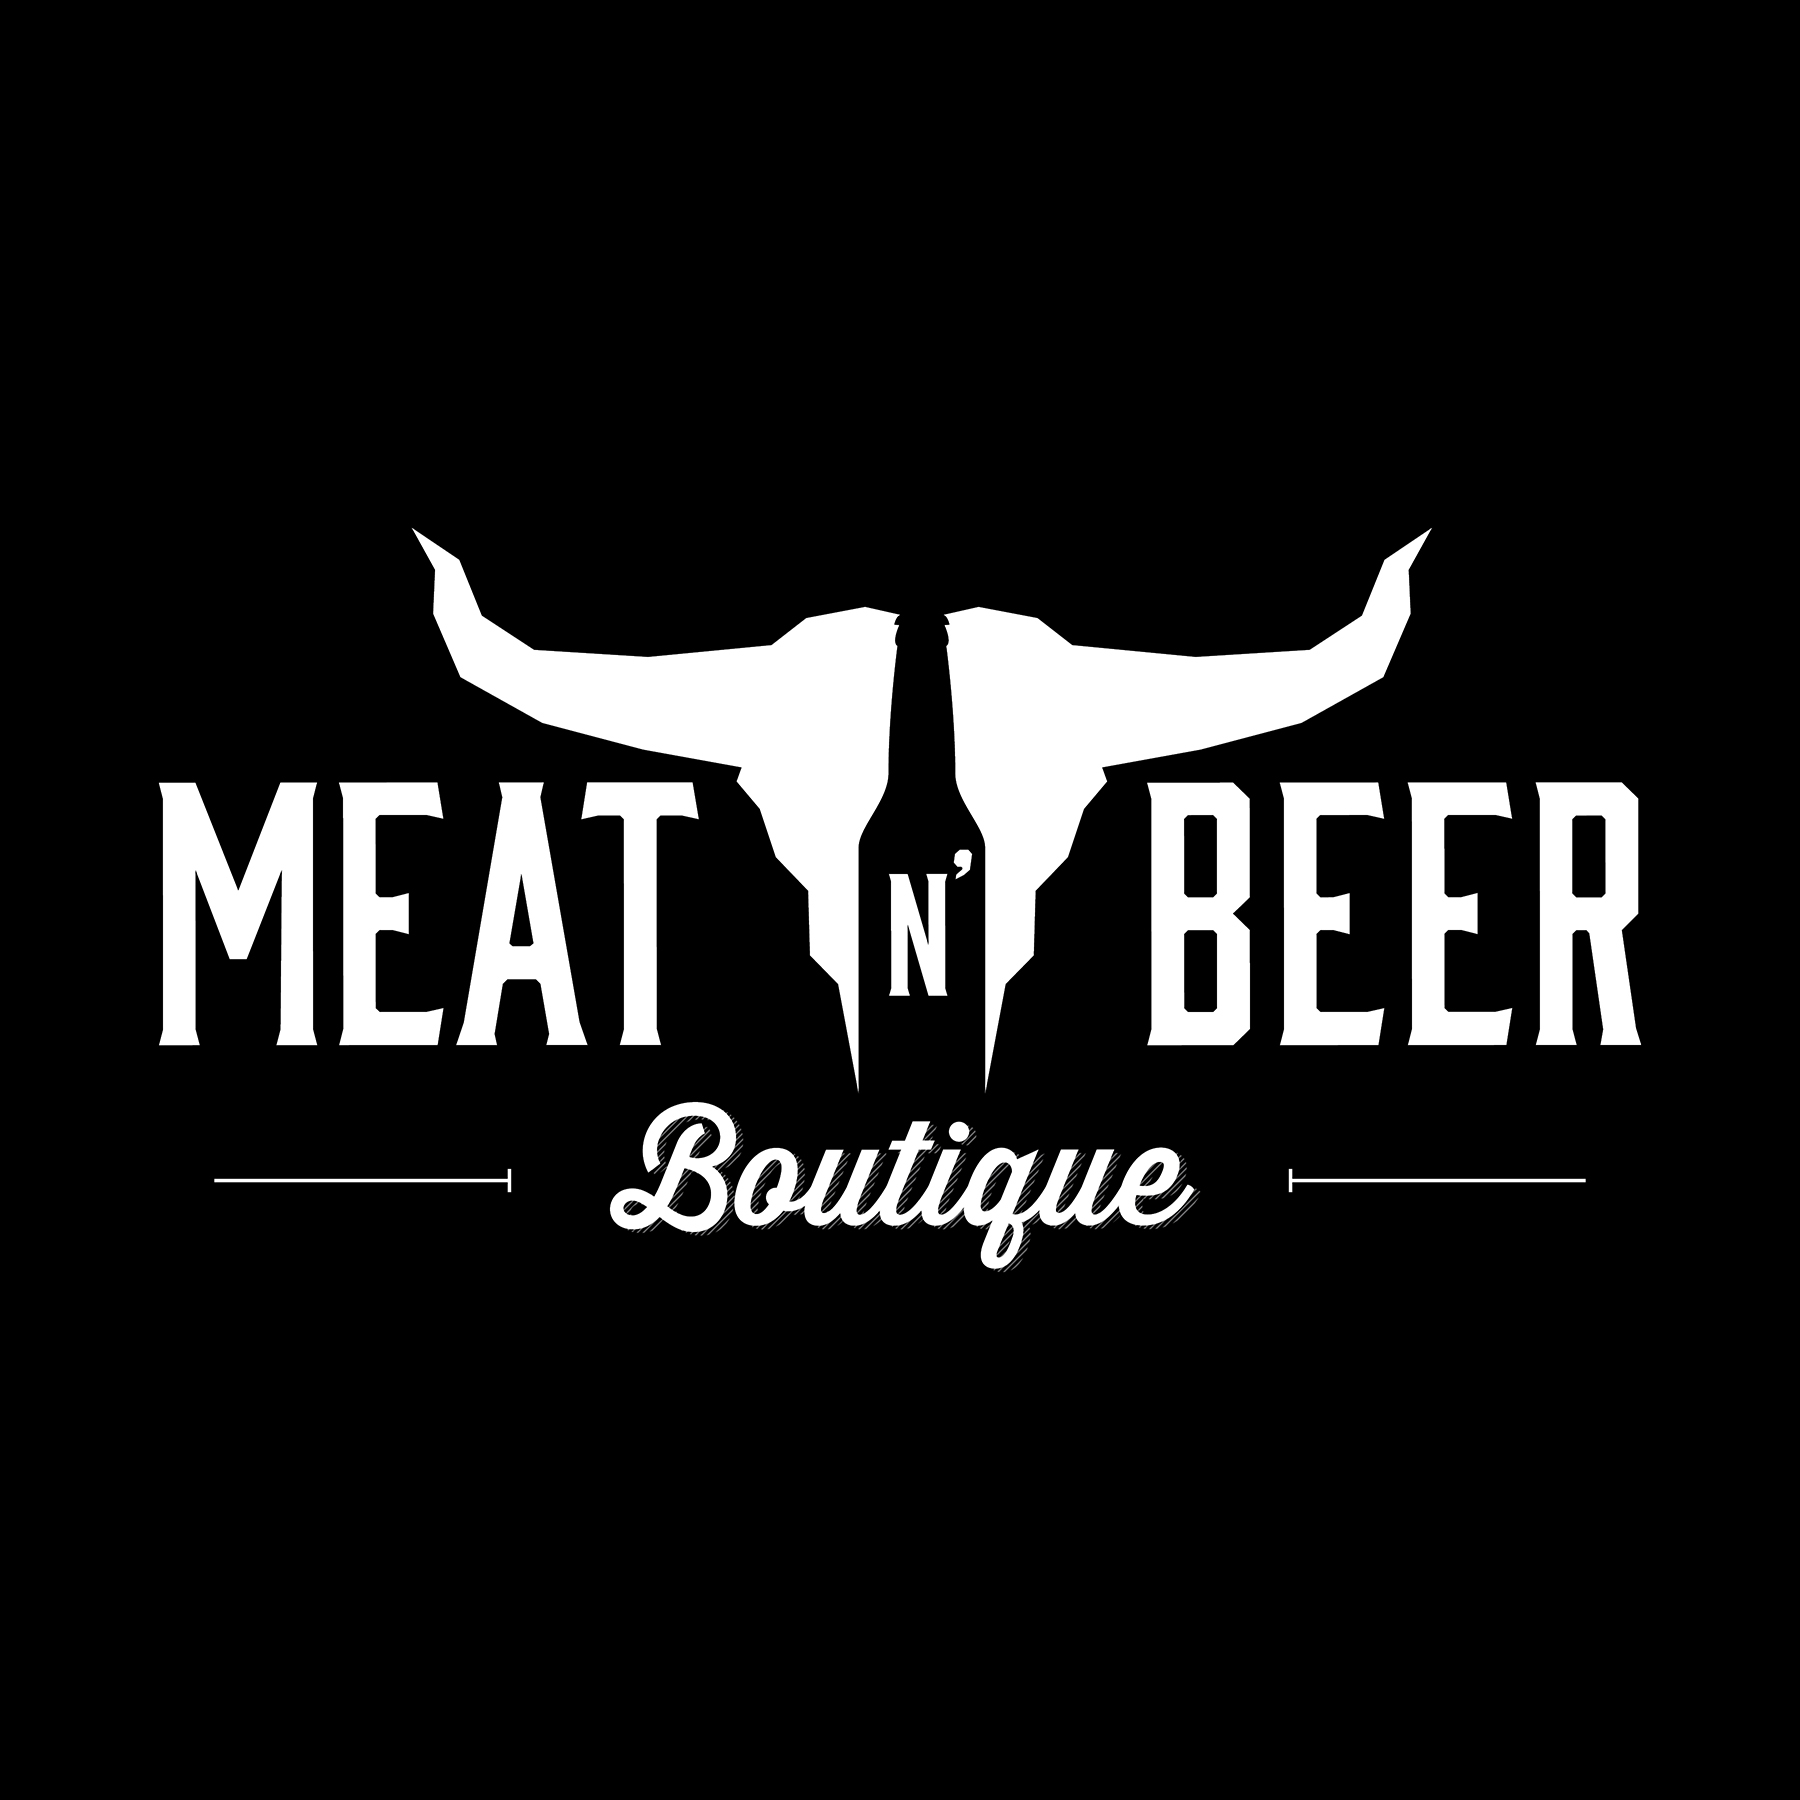 Meat n Beer Brand Design